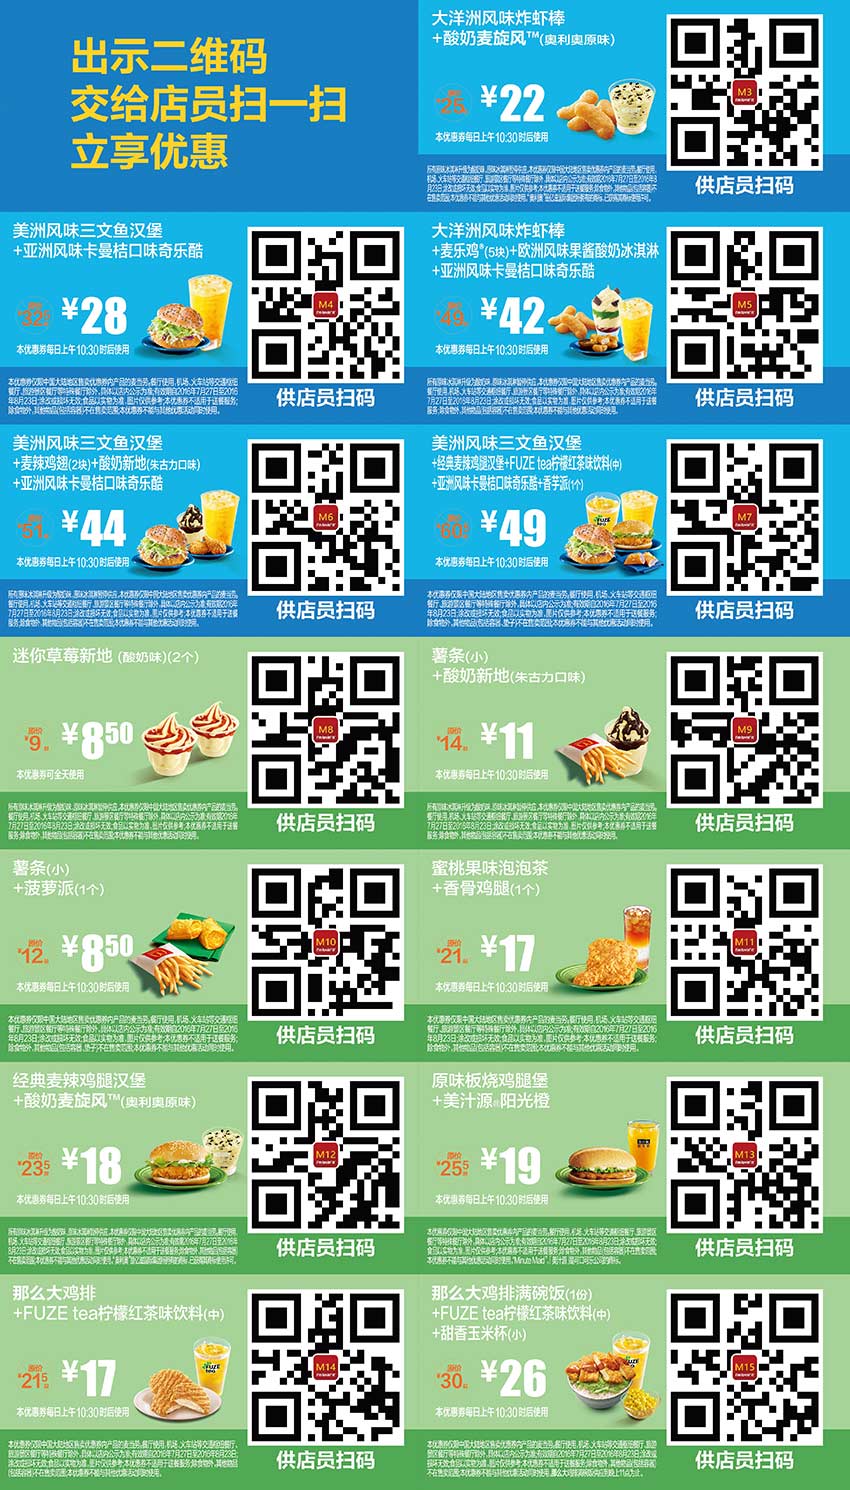 麦当劳优惠券2016年7月8月整张版本，麦当劳7月8月手机优惠券出示享优惠 有效期至：2016年8月23日 www.5ikfc.com